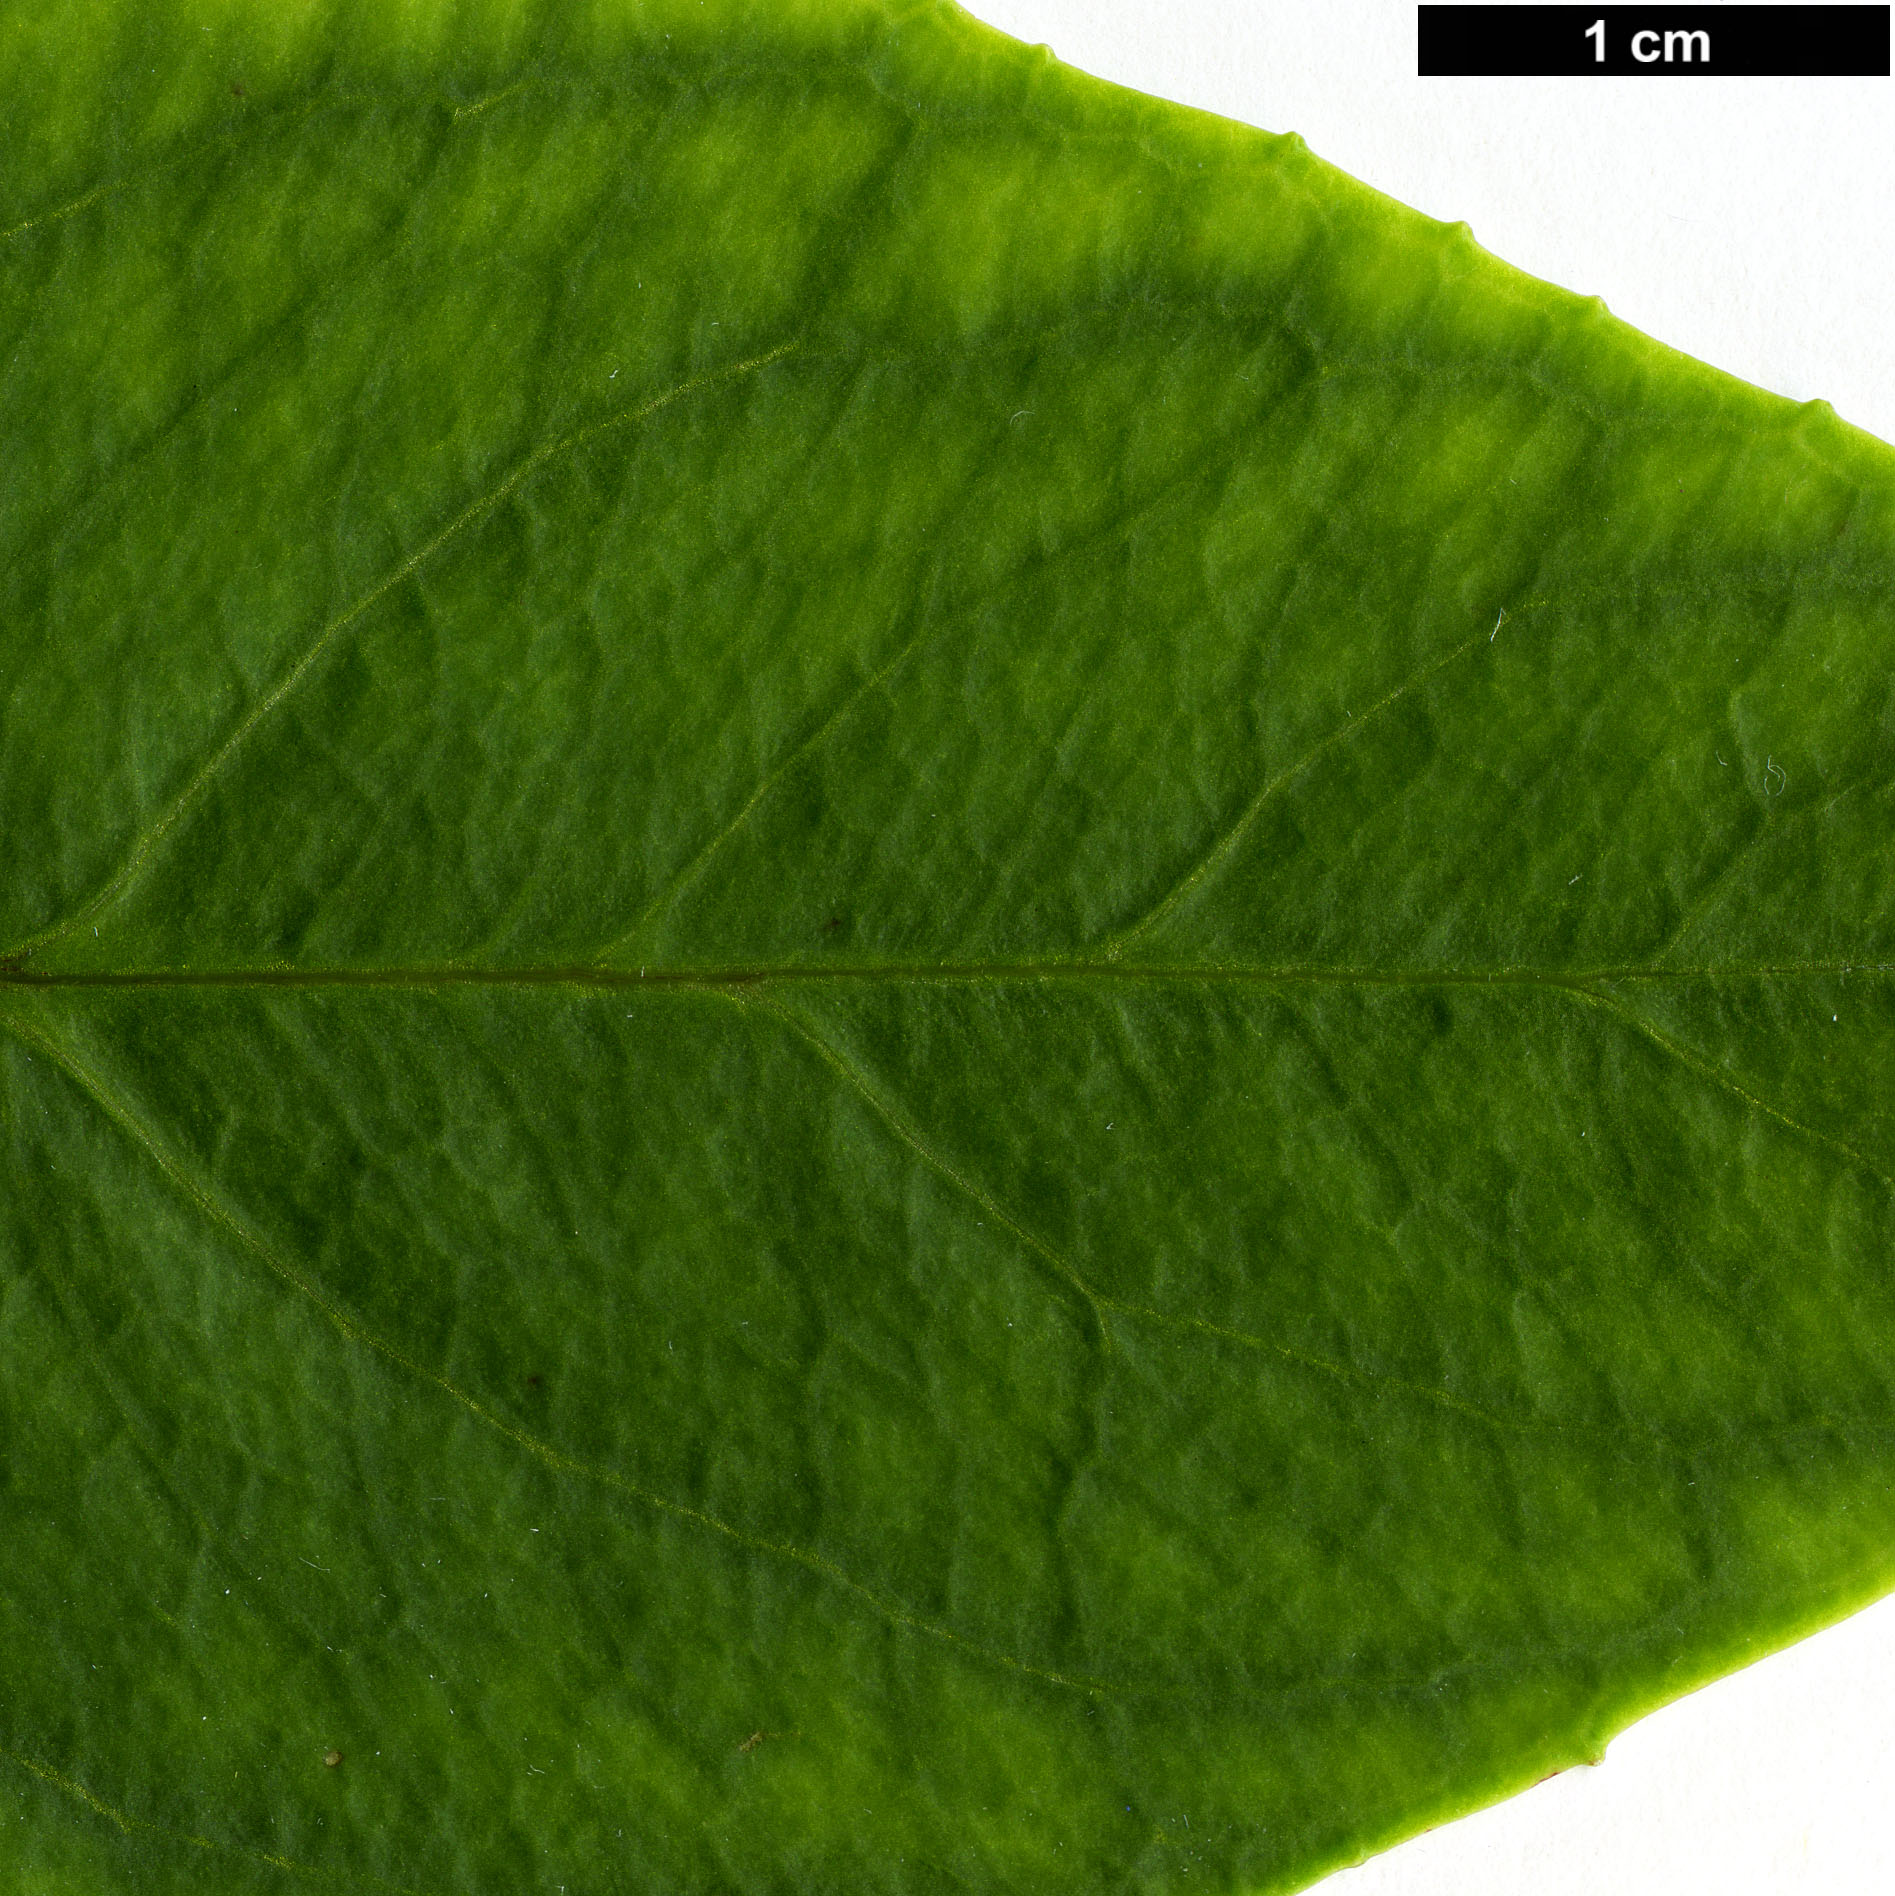 High resolution image: Family: Hydrangeaceae - Genus: Hydrangea - Taxon: lobbii